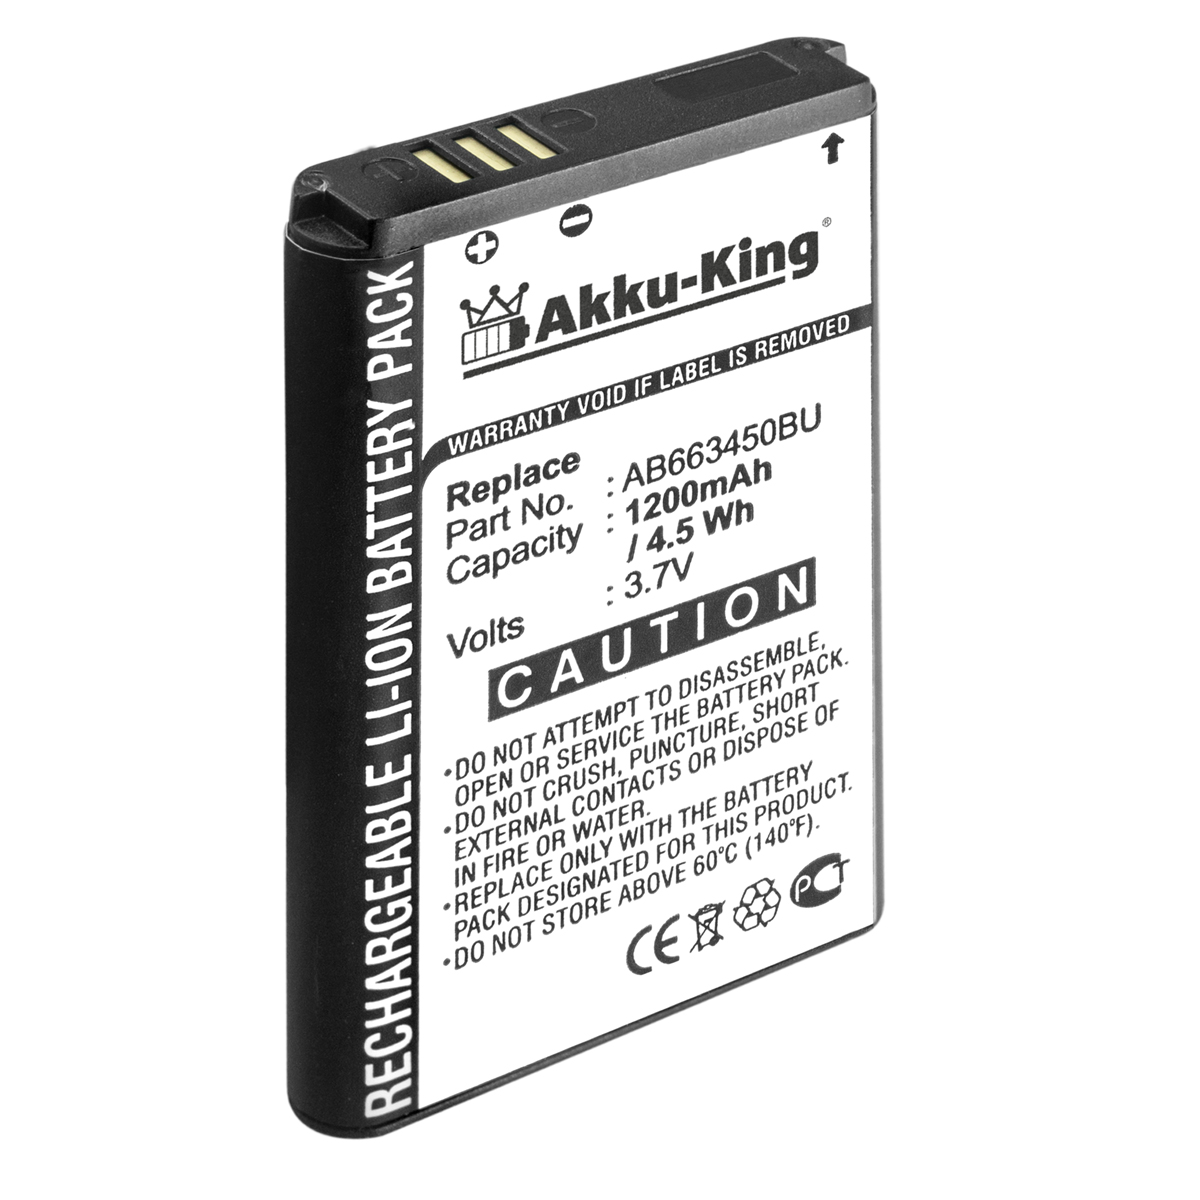 1200mAh Akku Li-Ion Volt, Handy-Akku, kompatibel Samsung AB663450BE mit 3.7 AKKU-KING